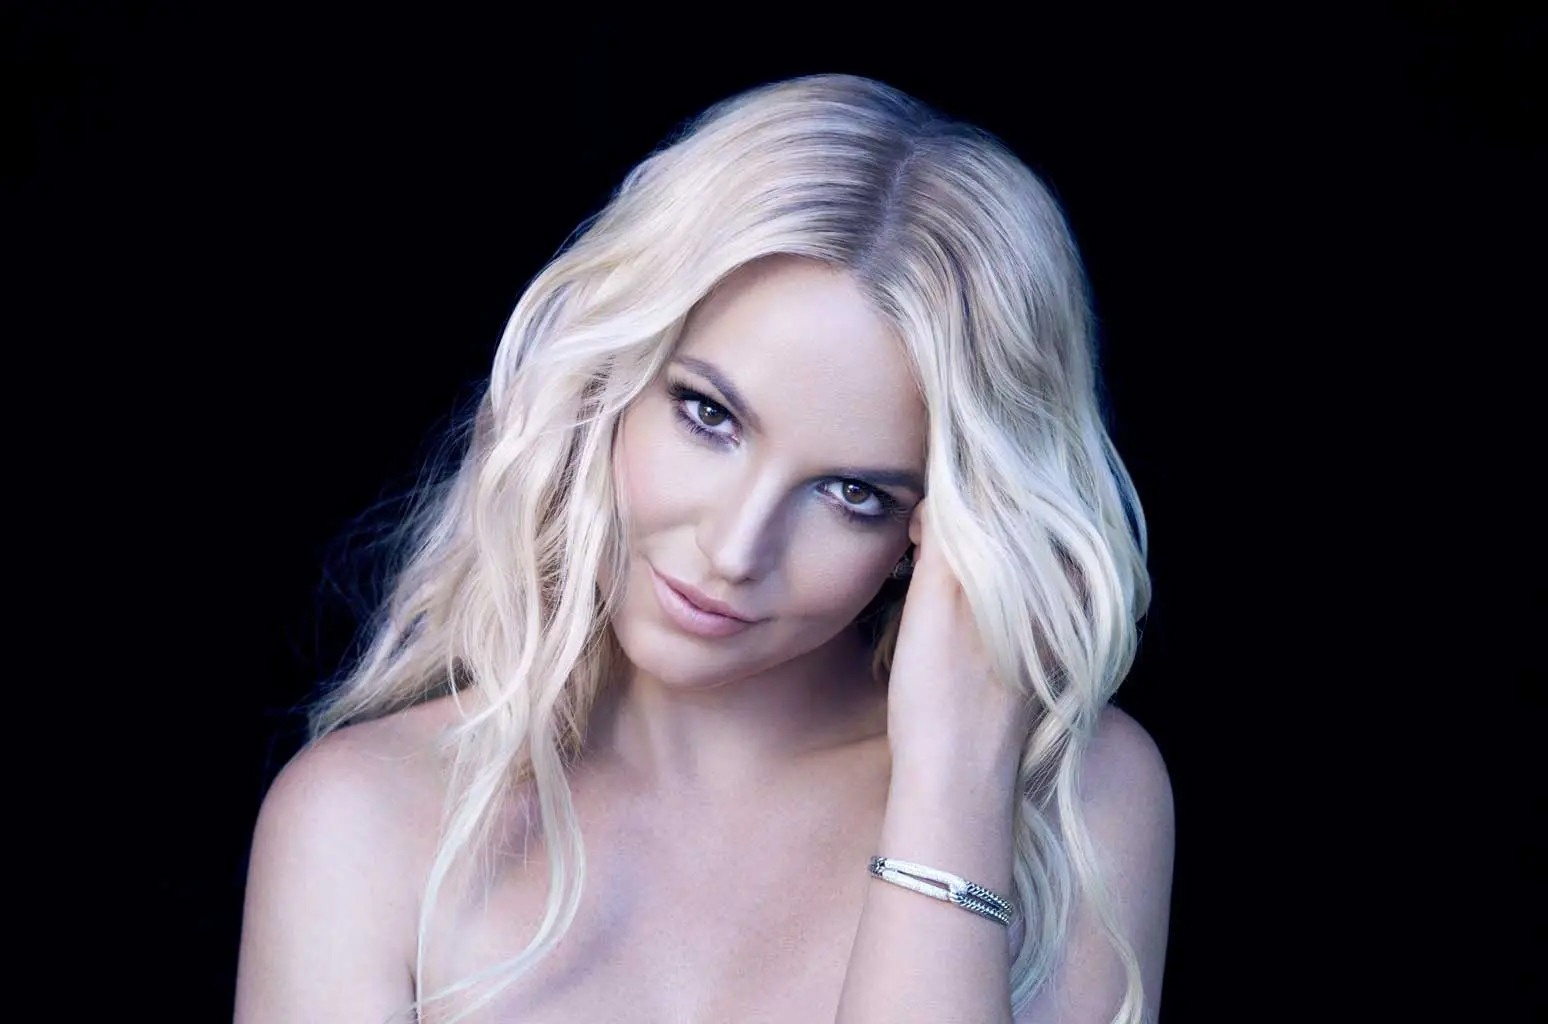 Cuốn sách phơi bày 13 năm bi kịch của Britney Spears - ảnh 1